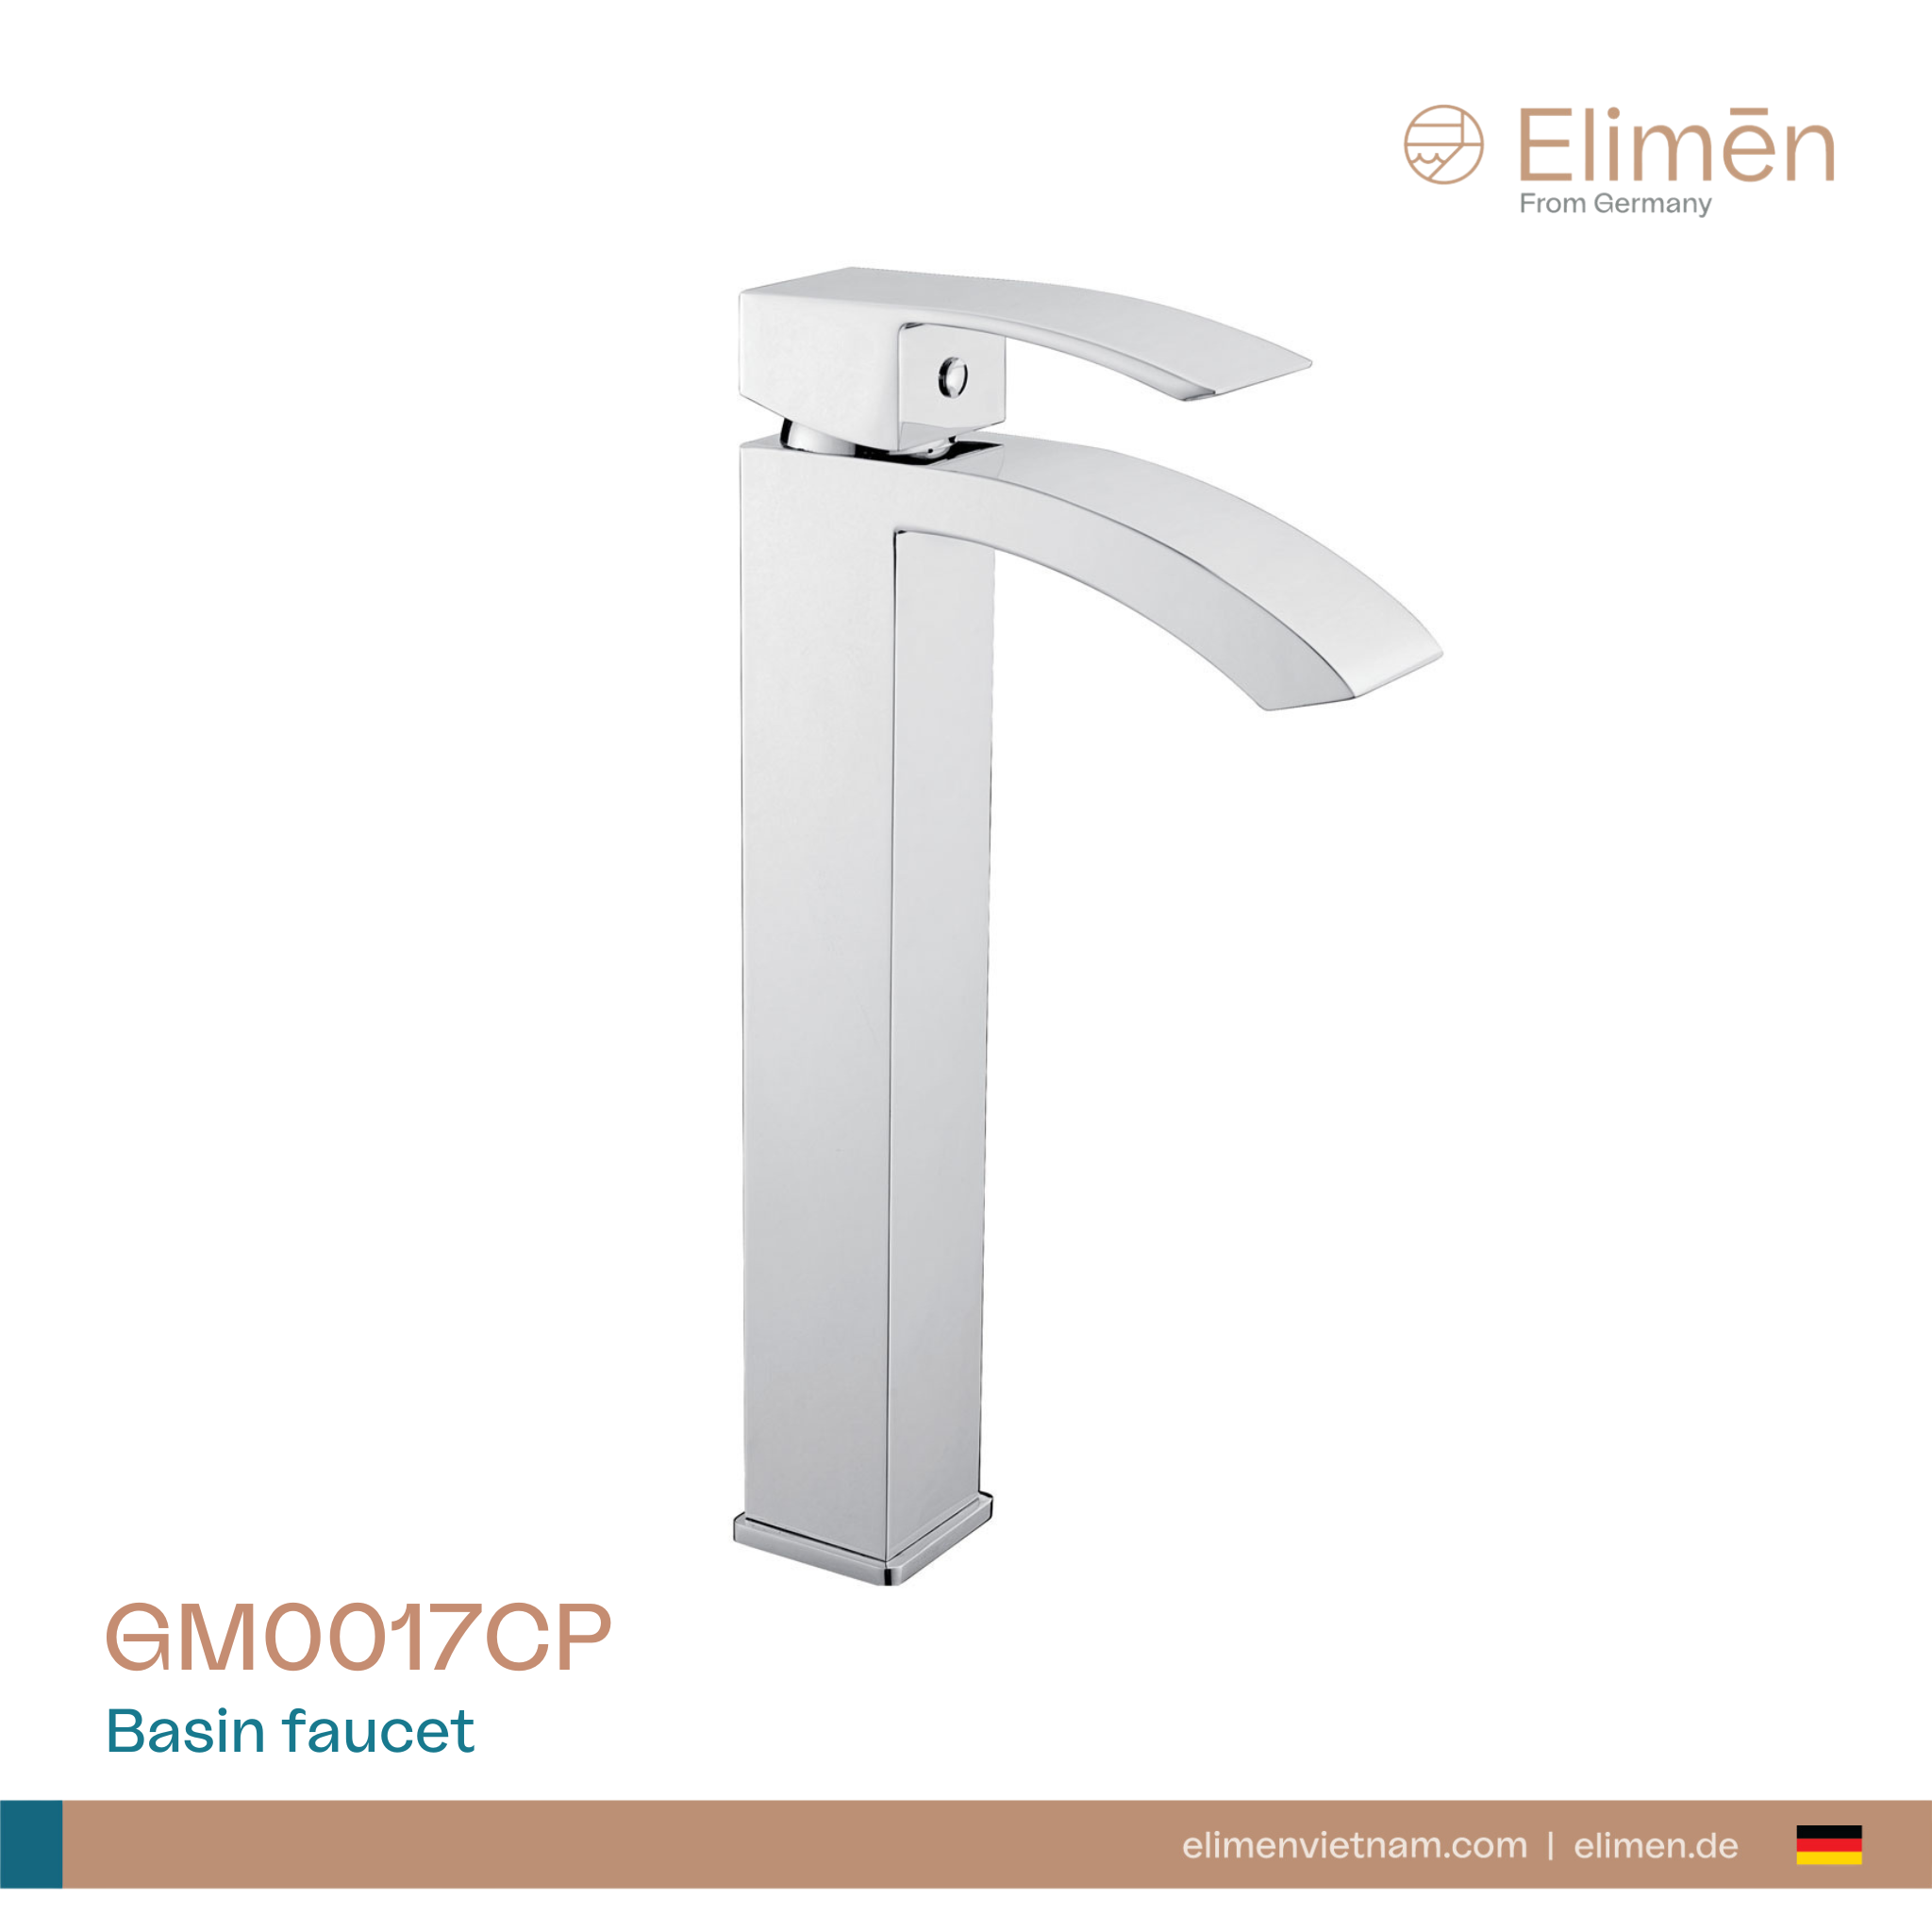 Elimen basin faucet - Code GM0017CP